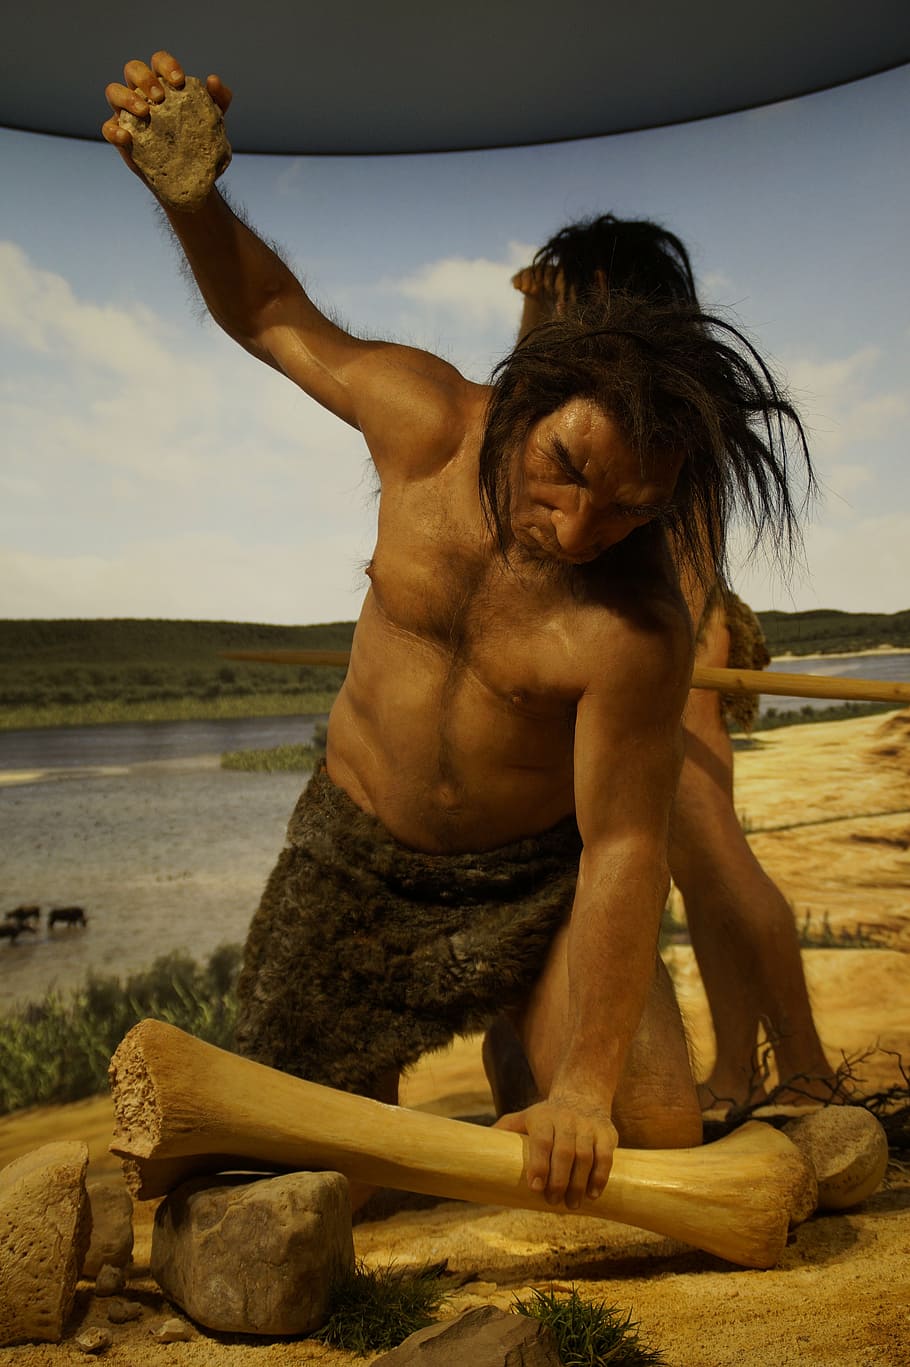 antepasado, edad de piedra, hombre de las cavernas, neandertal, caza, museo, muñeca, hombre, evolución, desarrollo